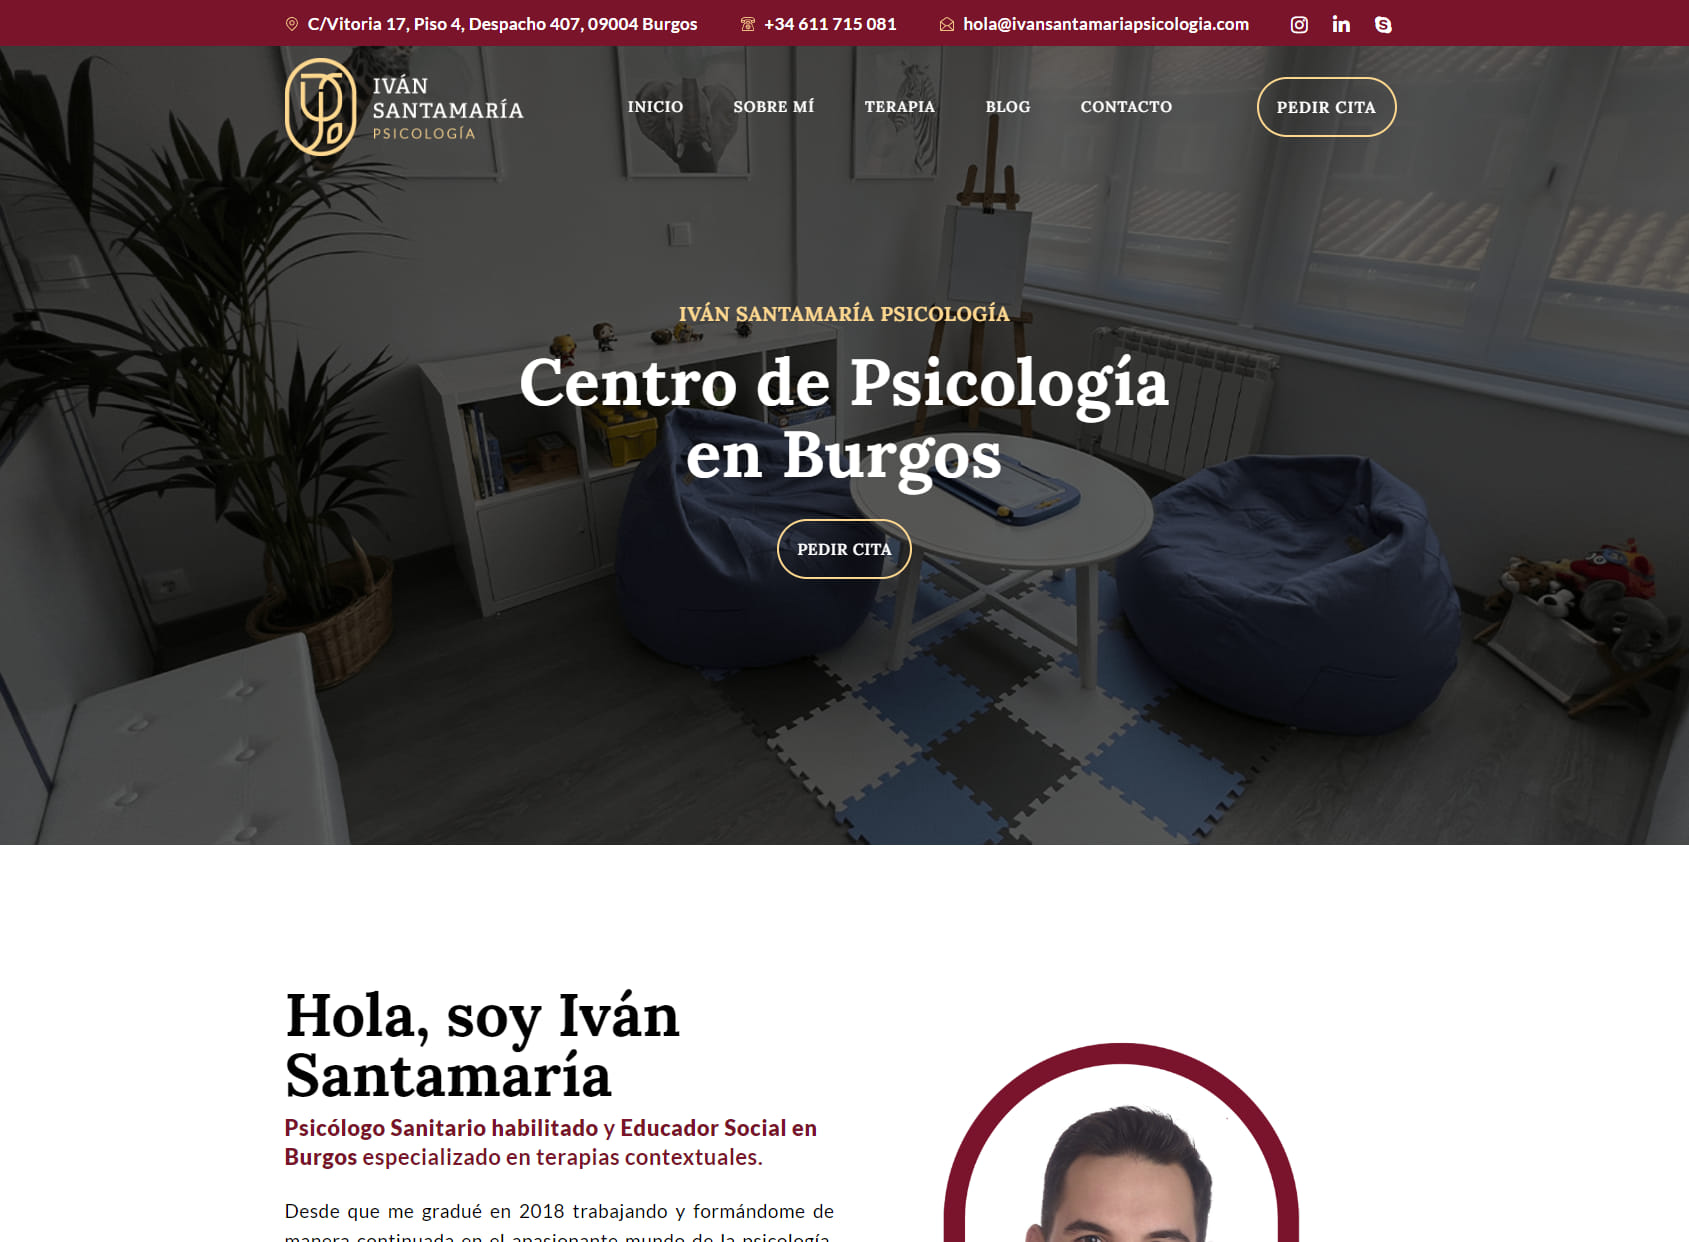 Iván Santamaría Psicología: Centro de Psicología en Burgos